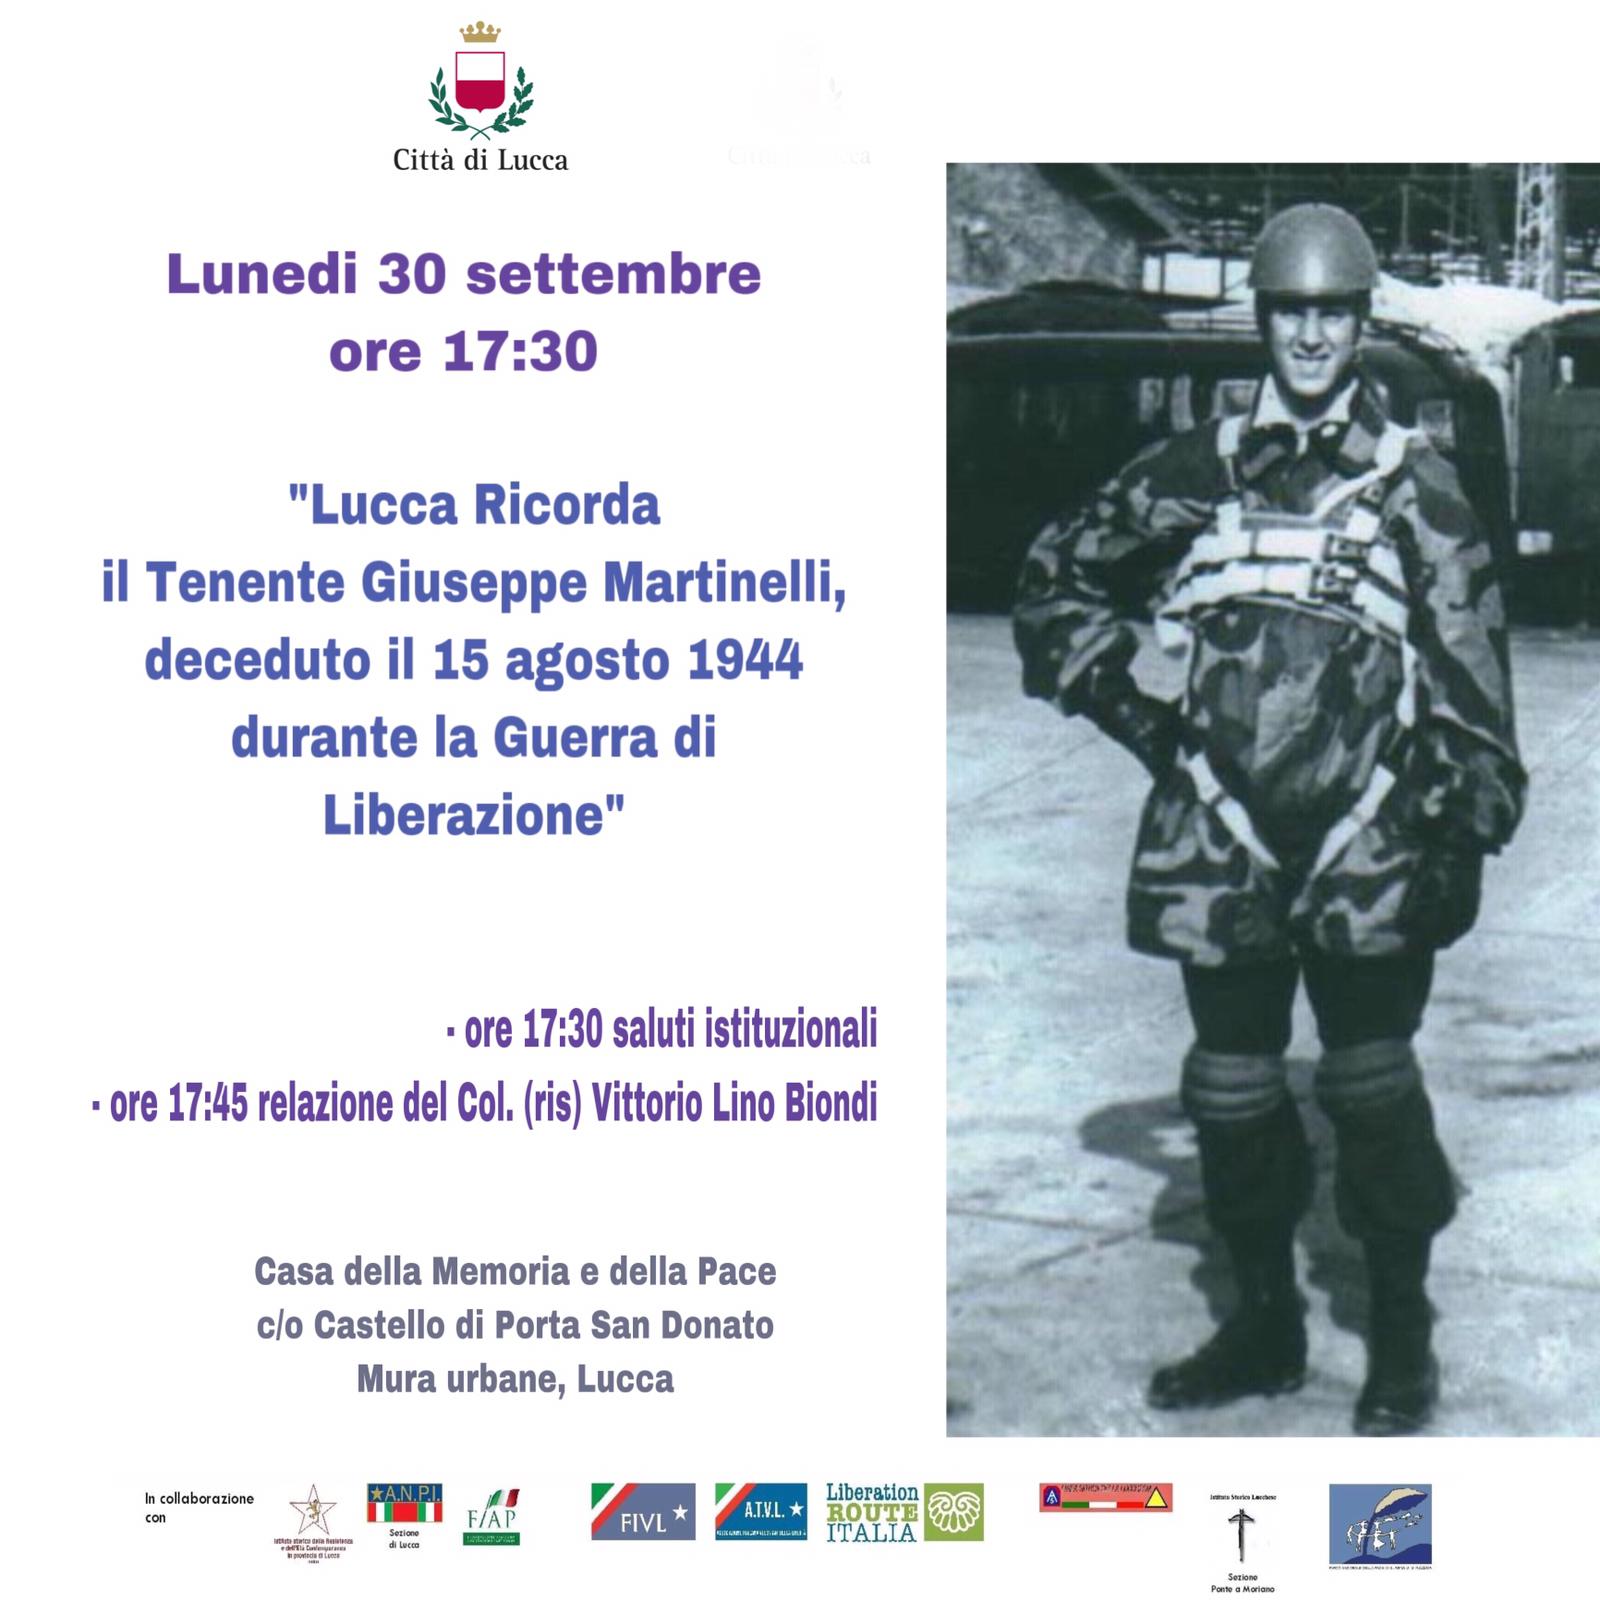 Lucca Ricorda il Tenente Giuseppe Martinelli  paracadutista lucchese morto in combattimento nel 1944